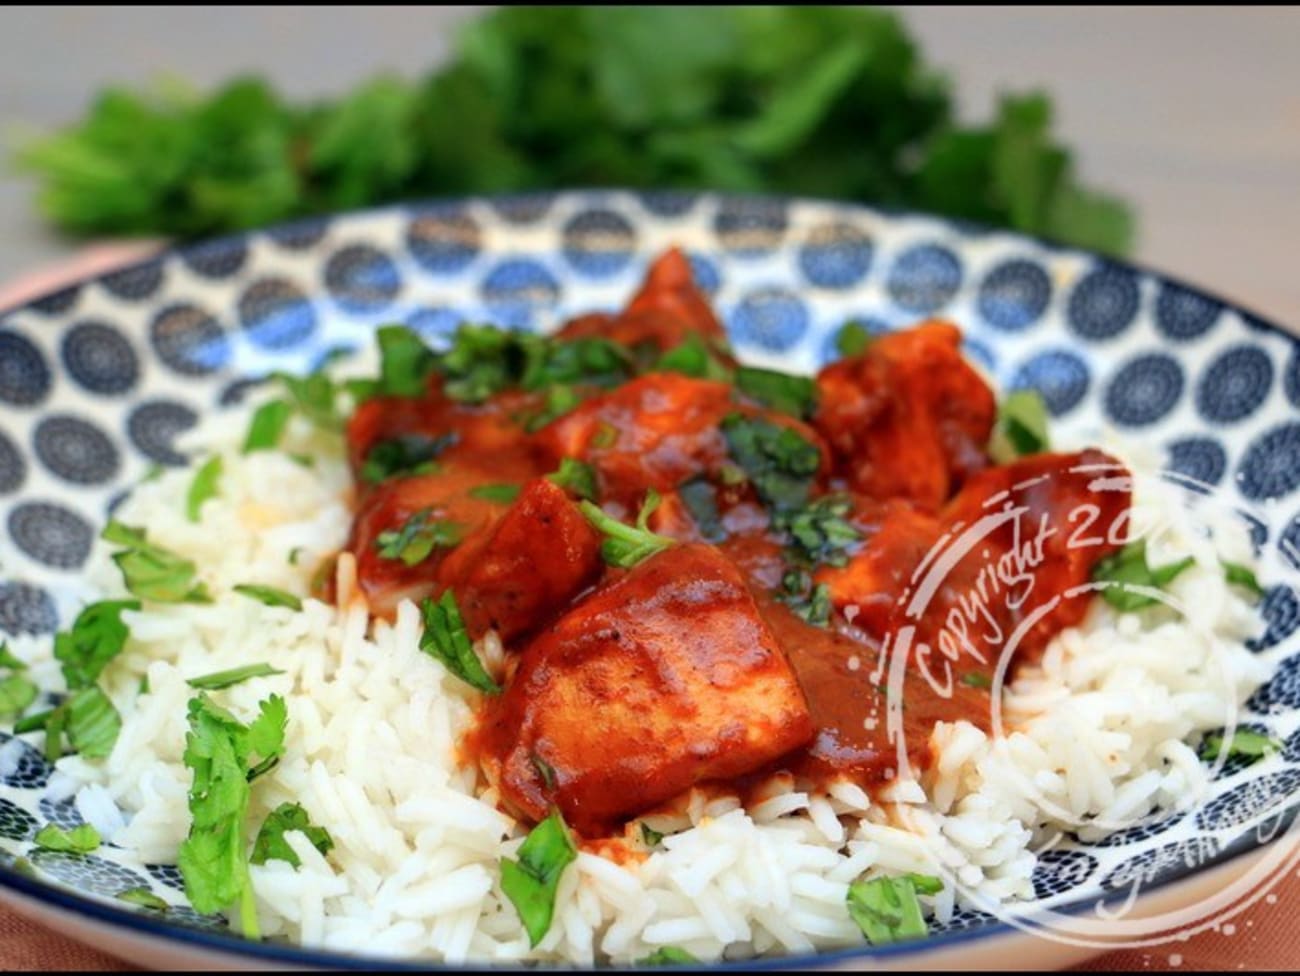 Curry rouge thaï avec poulet poché